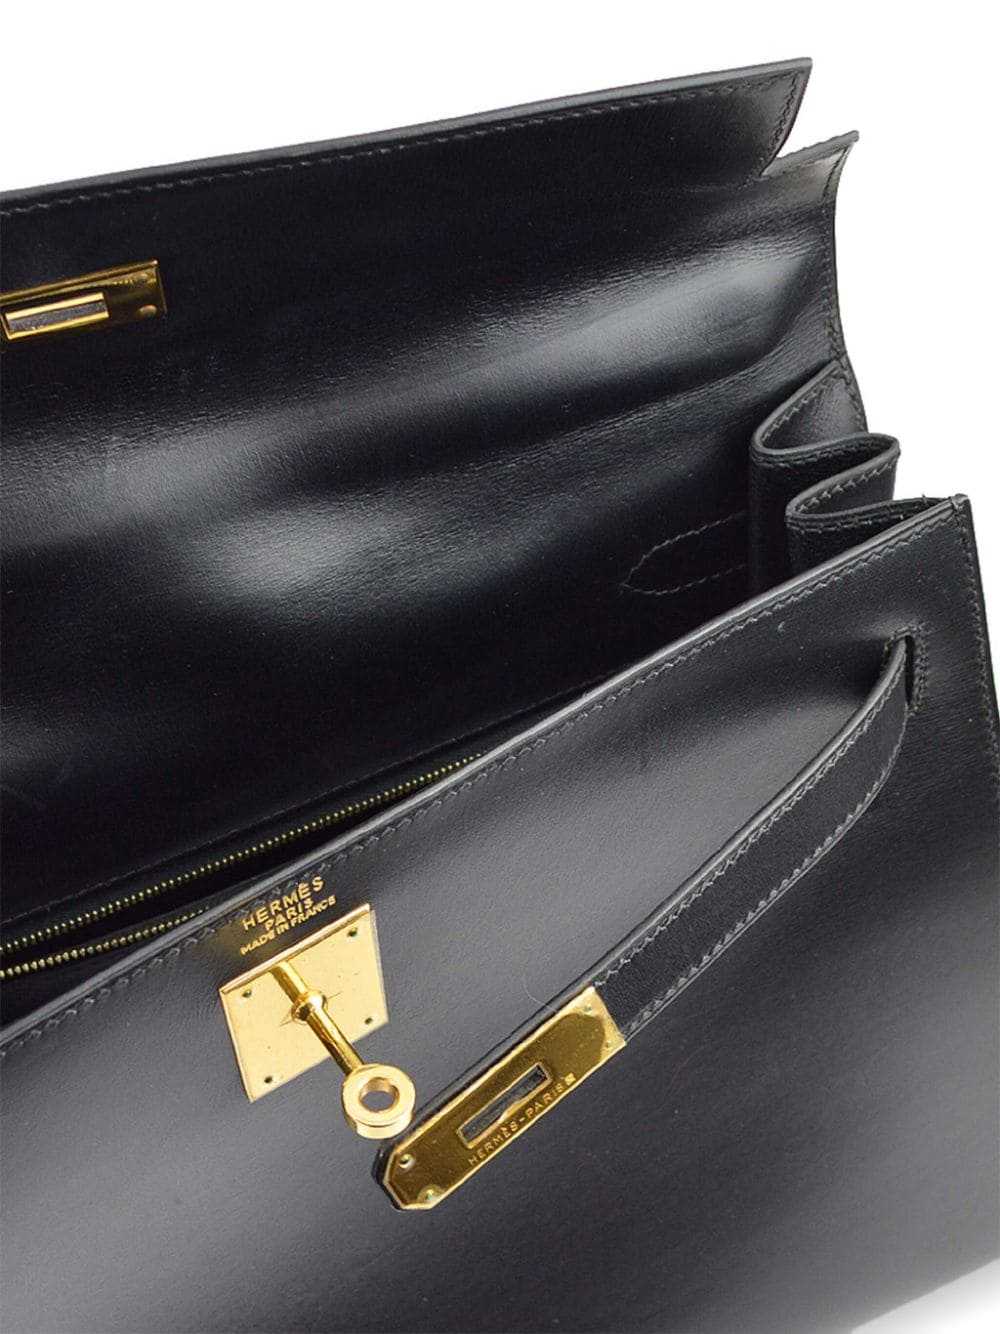 Hermès Pre-Owned 1999 Kelly 32 Sellier handbag - … - image 4